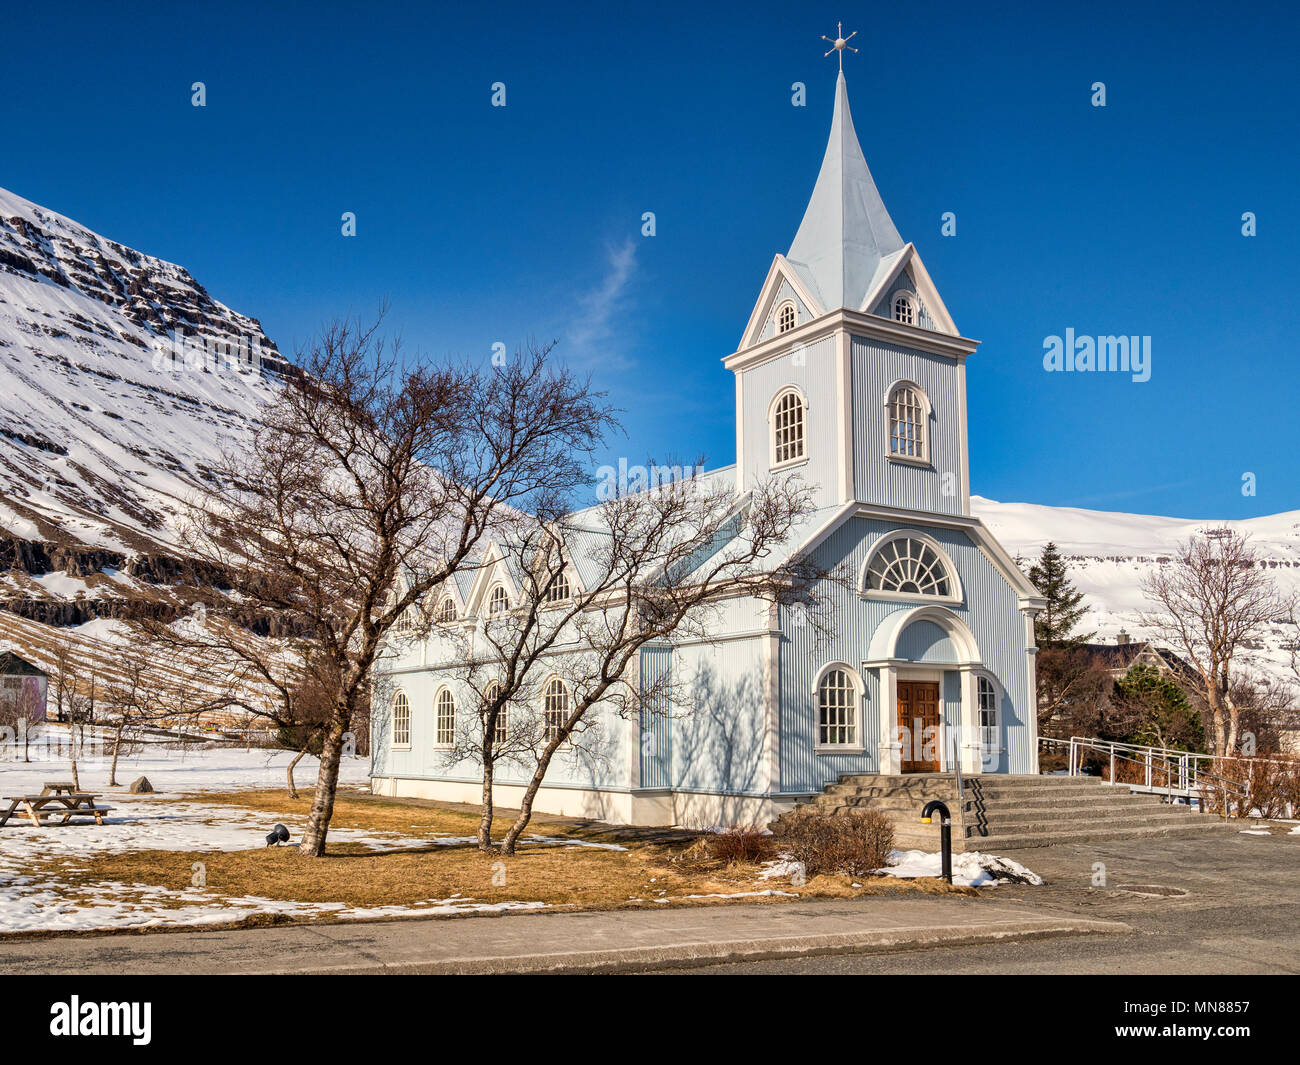 La famosa chiesa blu a Seyðisfjörður Affitto, Est Islanda, su una luminosa giornata di primavera con montagne innevate. Foto Stock